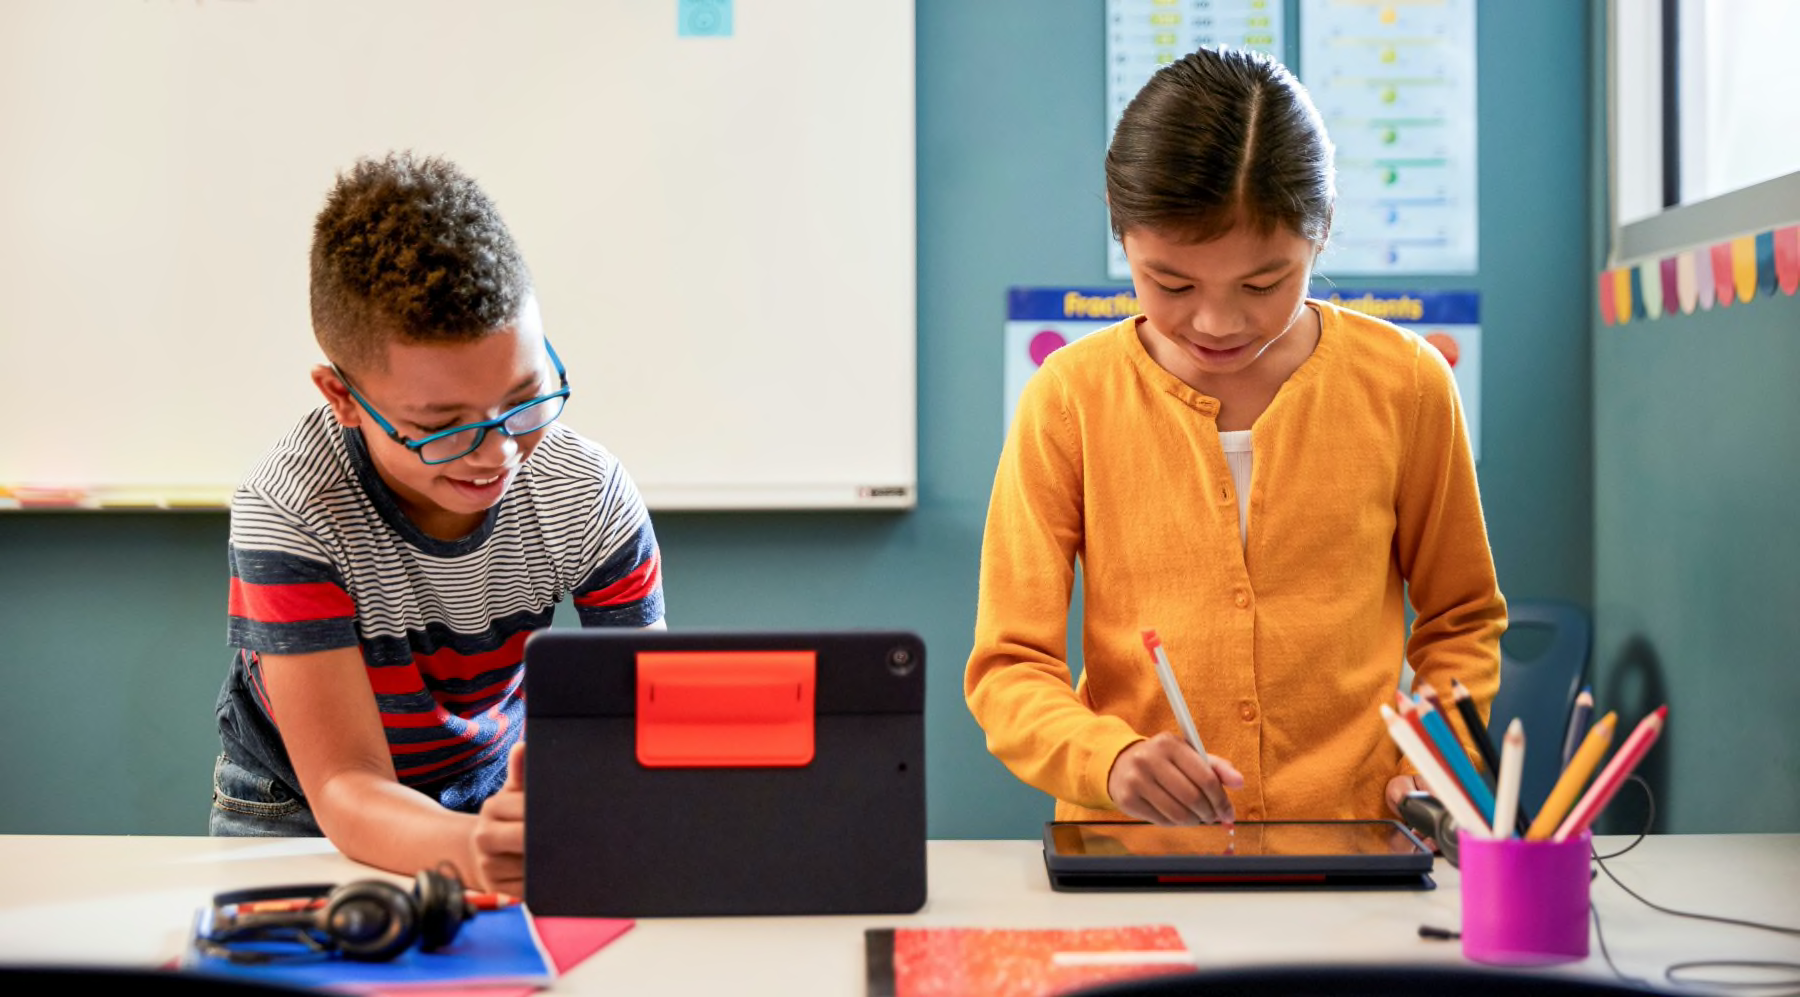 Vier innovatieve manieren waarop docenten technologie in de klas kunnen stimuleren